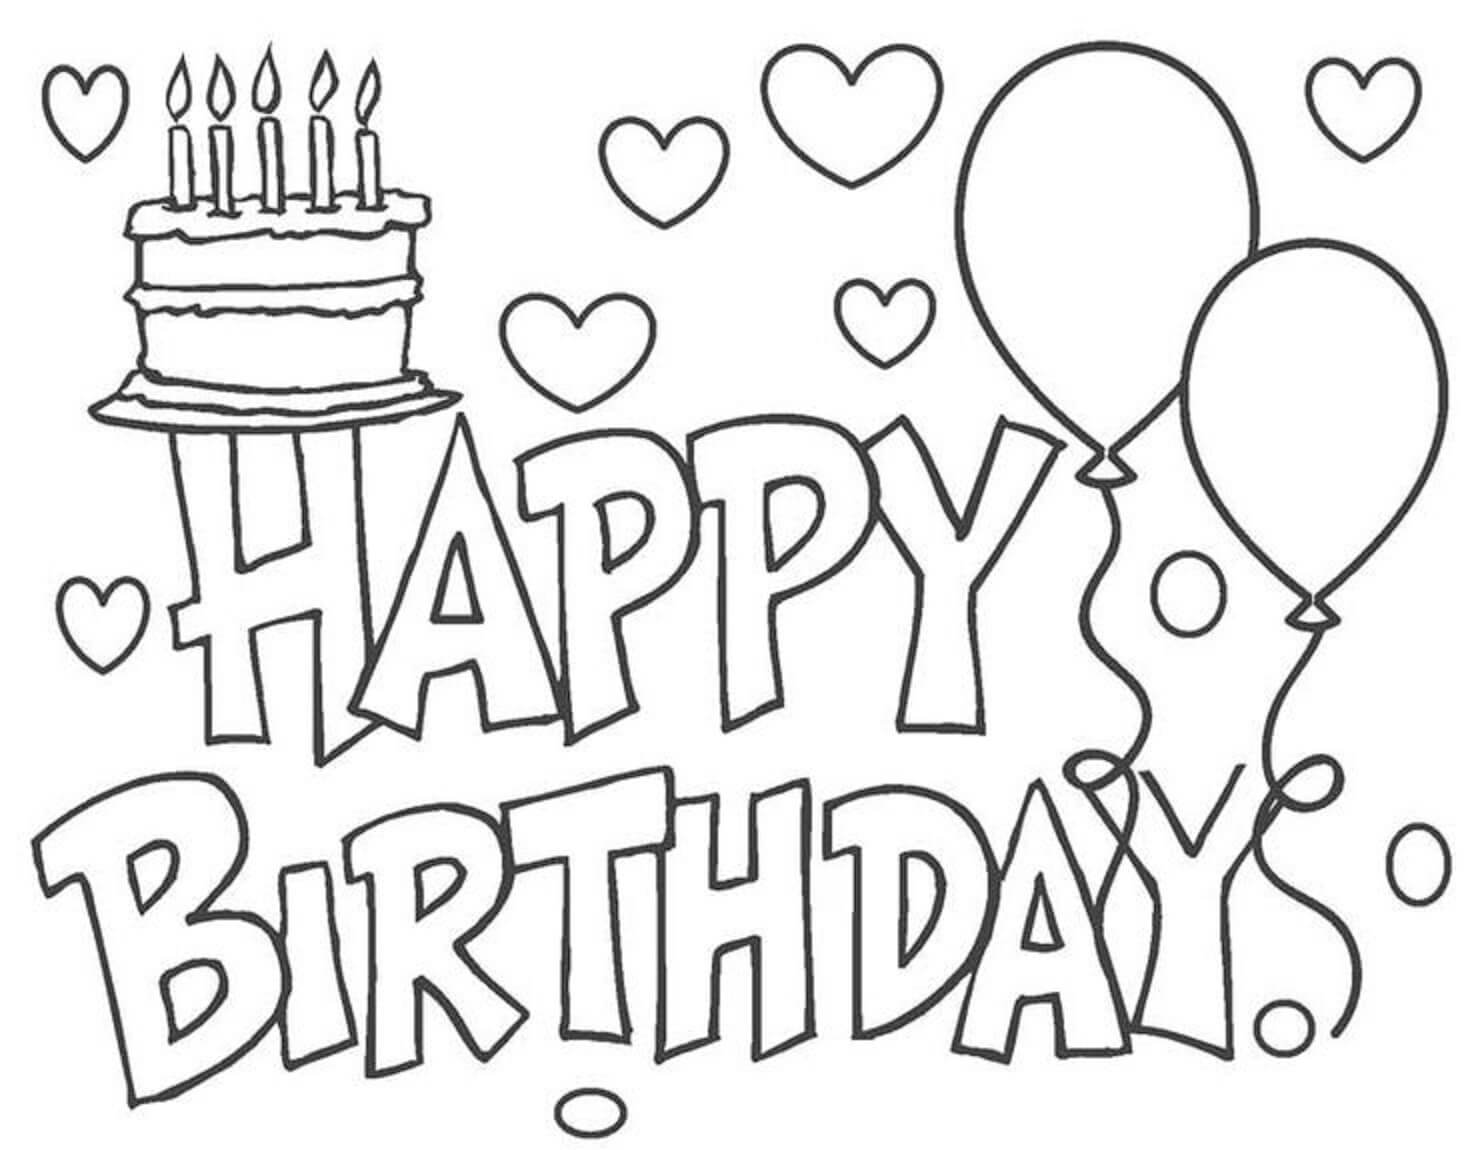 Geburtstagstorte und Luftballons zeichnen alles Gute zum Geburtstag